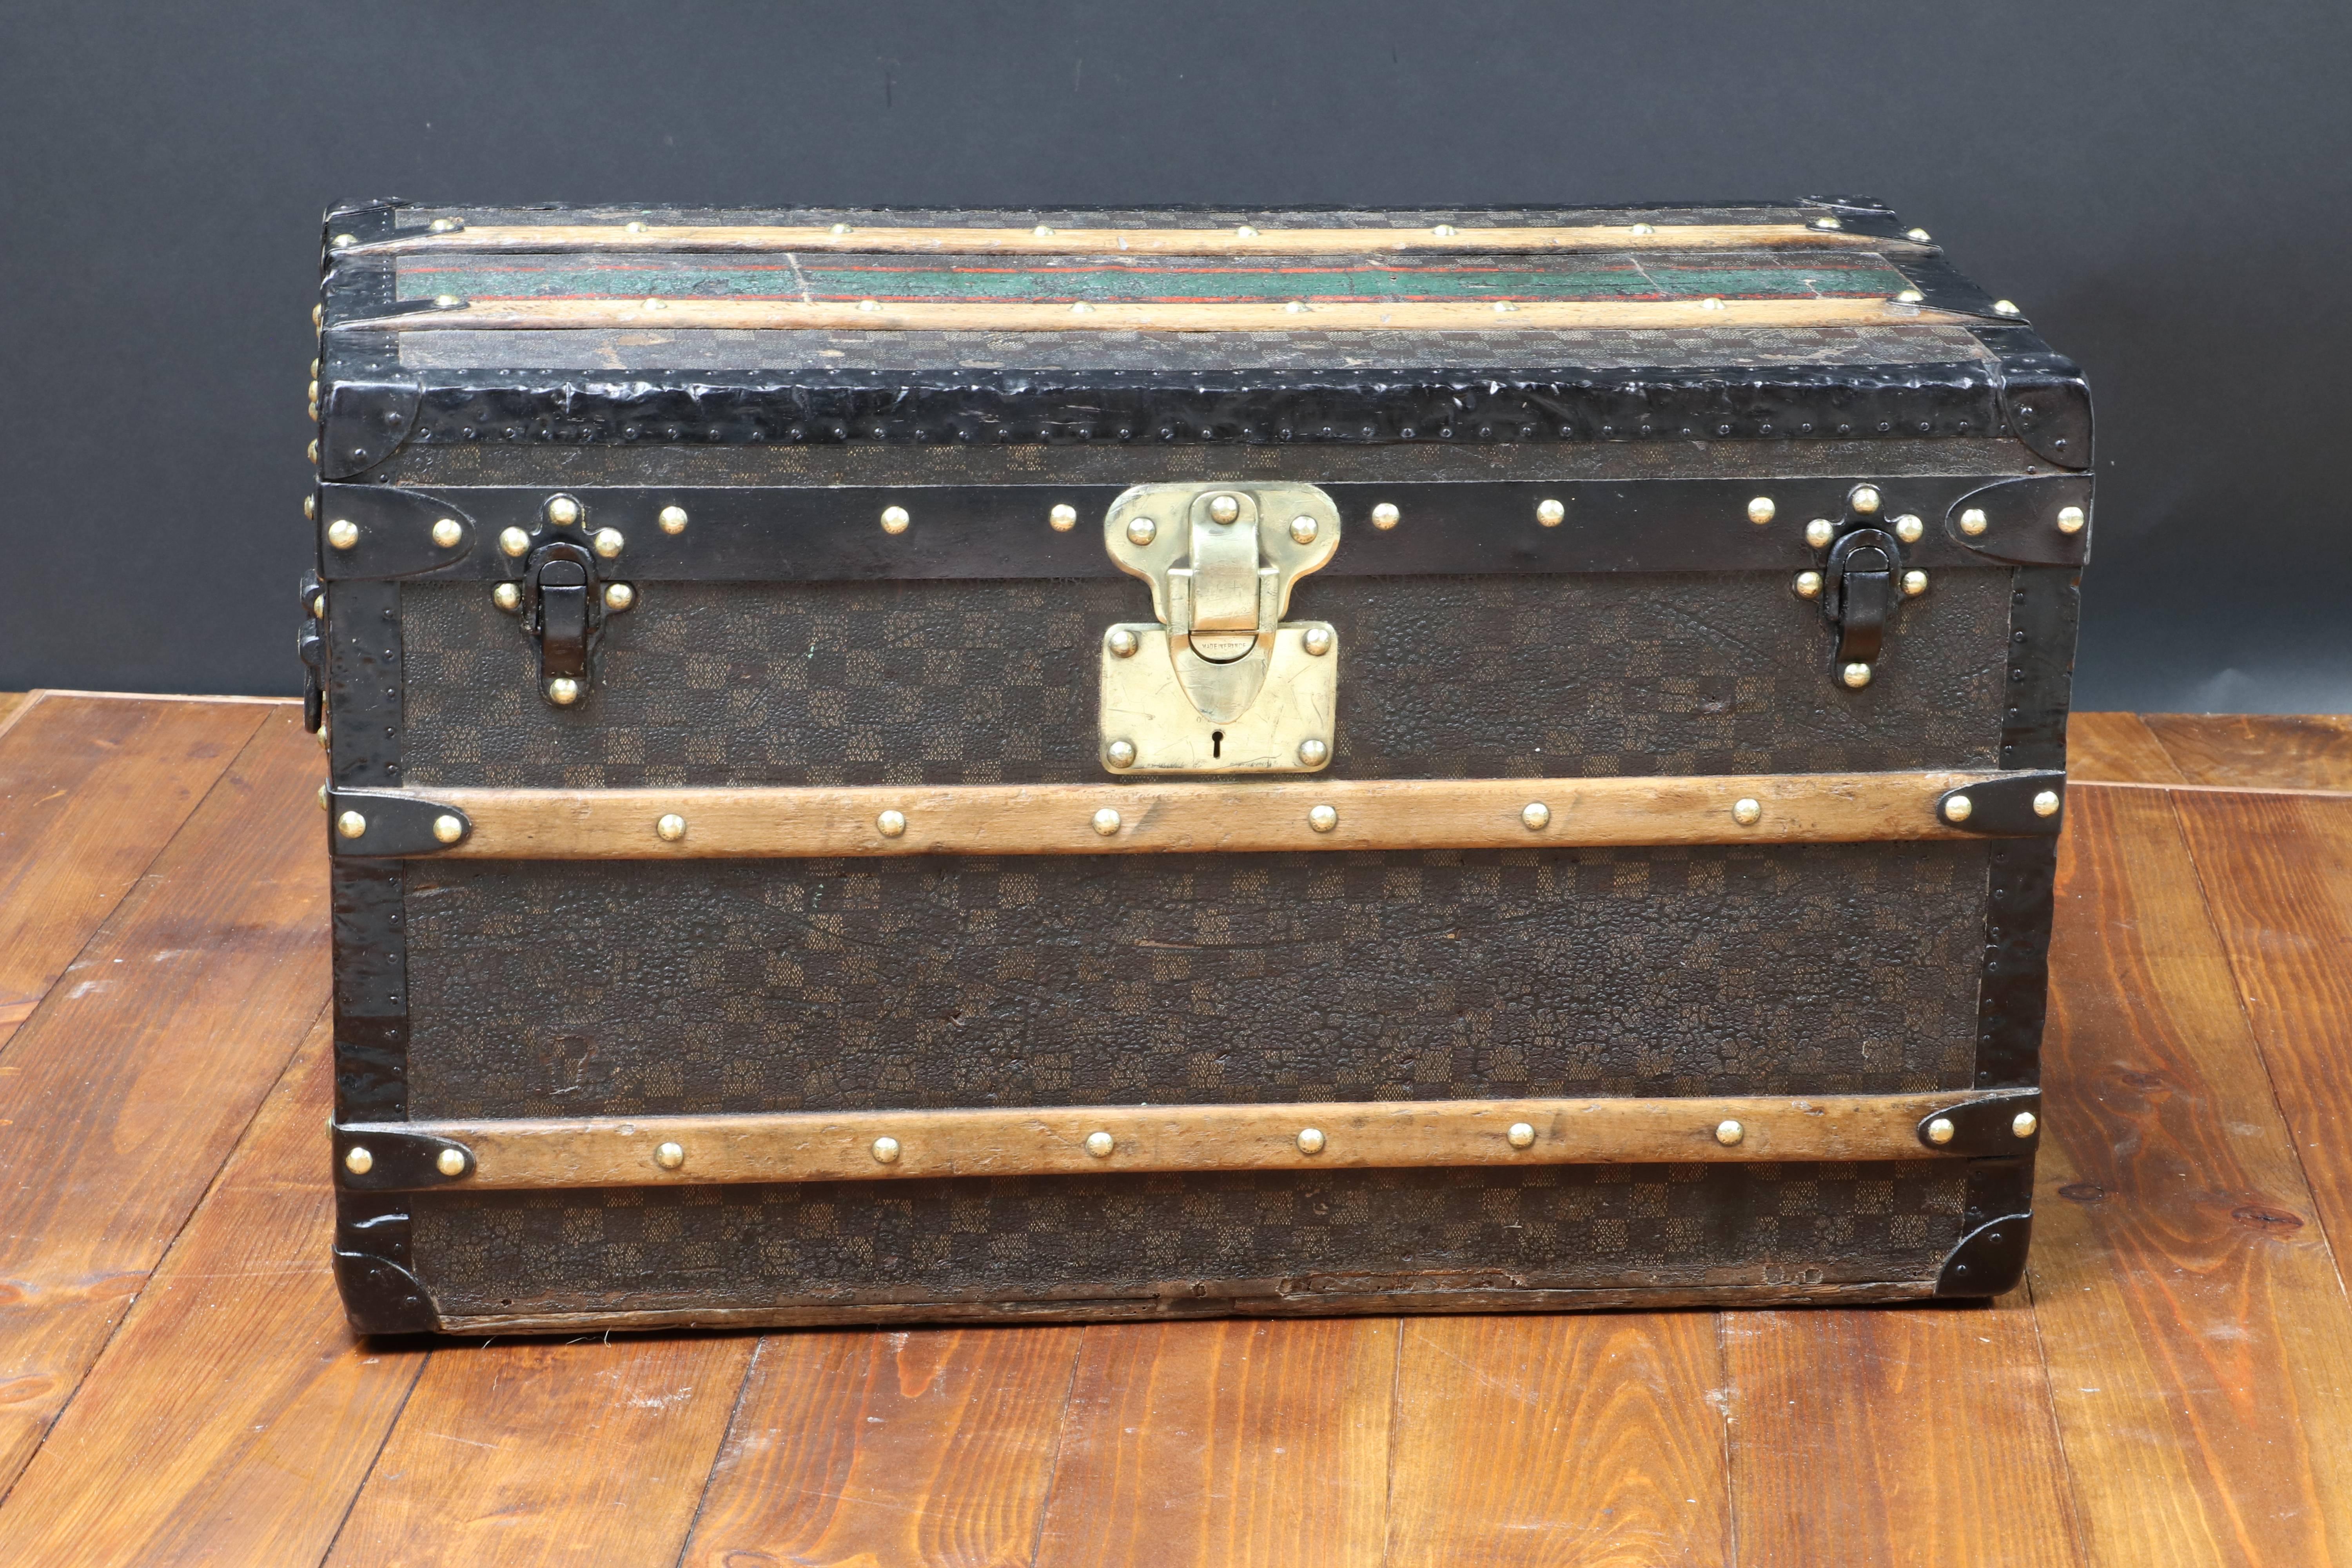 Malle Vuitton Damier / Louis Vuitton trunk.

Brass lock.

Steel handle.

Original inside.

Size cm: 76 cm wide x 43 cm height x 38 cm deep.

Malle Louis Vuitton à toile Damier.

Serrure laiton.

Poignées acier. 

Intérieur